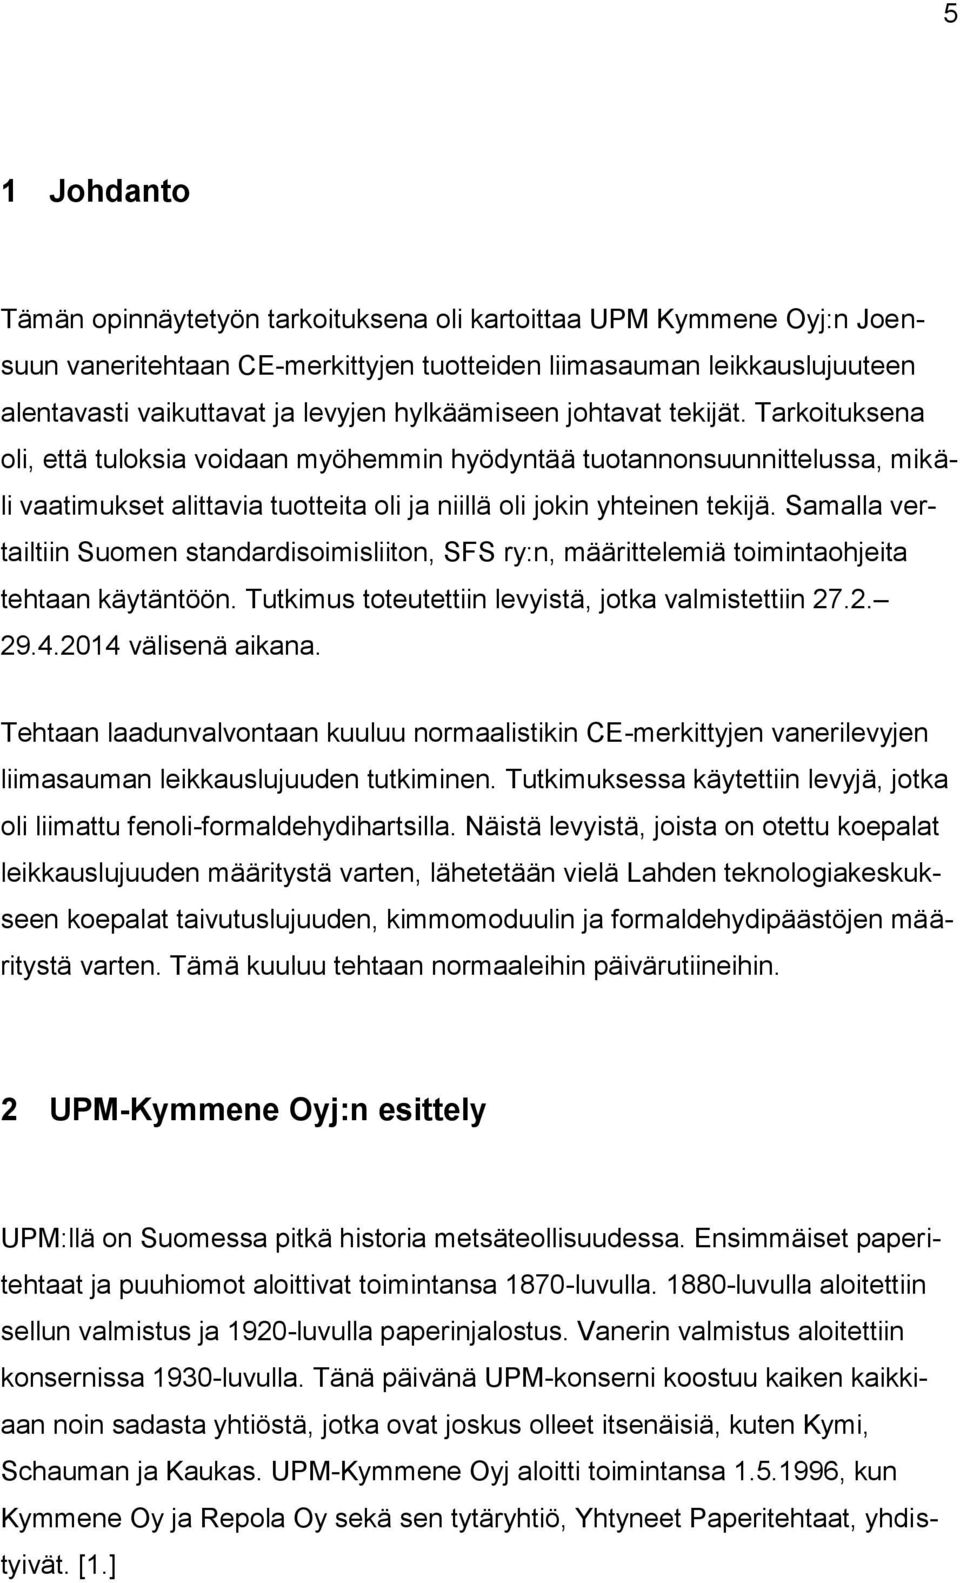 Samalla vertailtiin Suomen standardisoimisliiton, SFS ry:n, määrittelemiä toimintaohjeita tehtaan käytäntöön. Tutkimus toteutettiin levyistä, jotka valmistettiin 27.2. 29.4.2014 välisenä aikana.